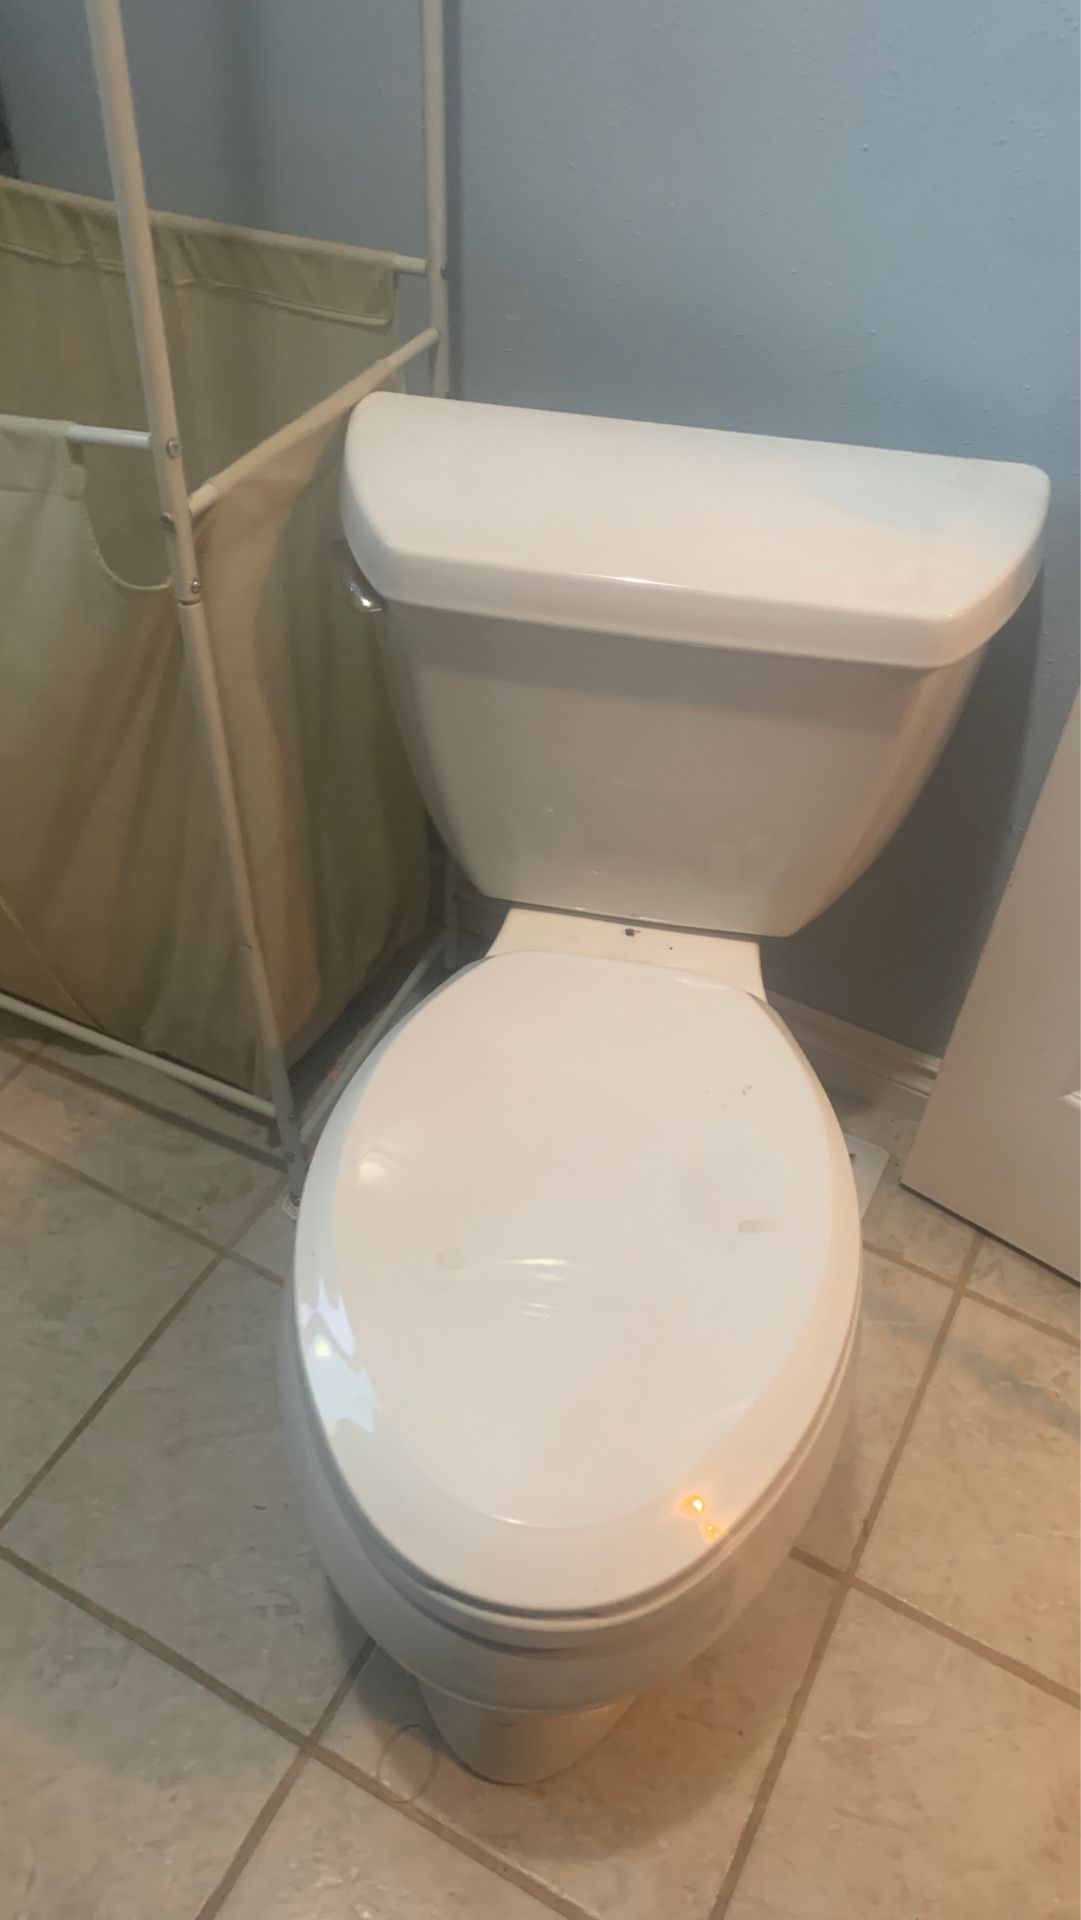 New toilette best offer